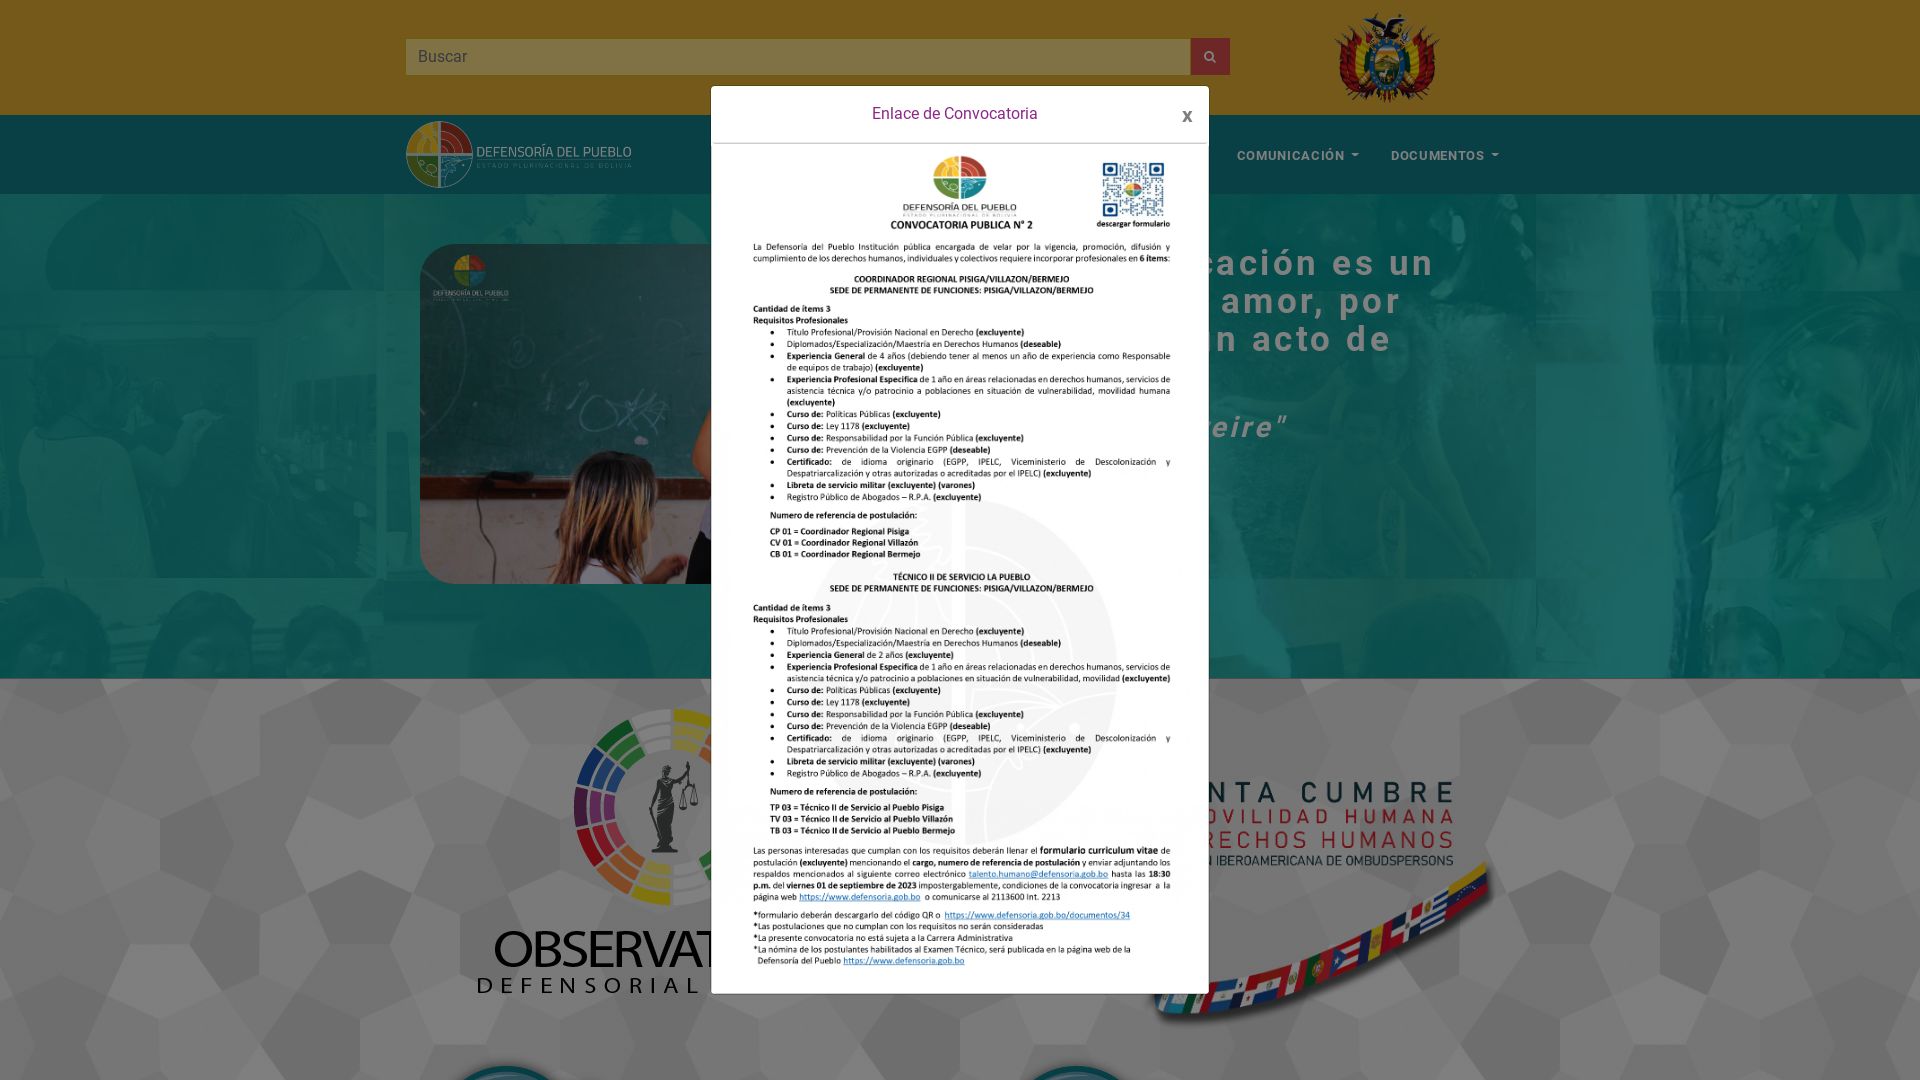 Status do site www.defensoria.gob.bo está   ONLINE